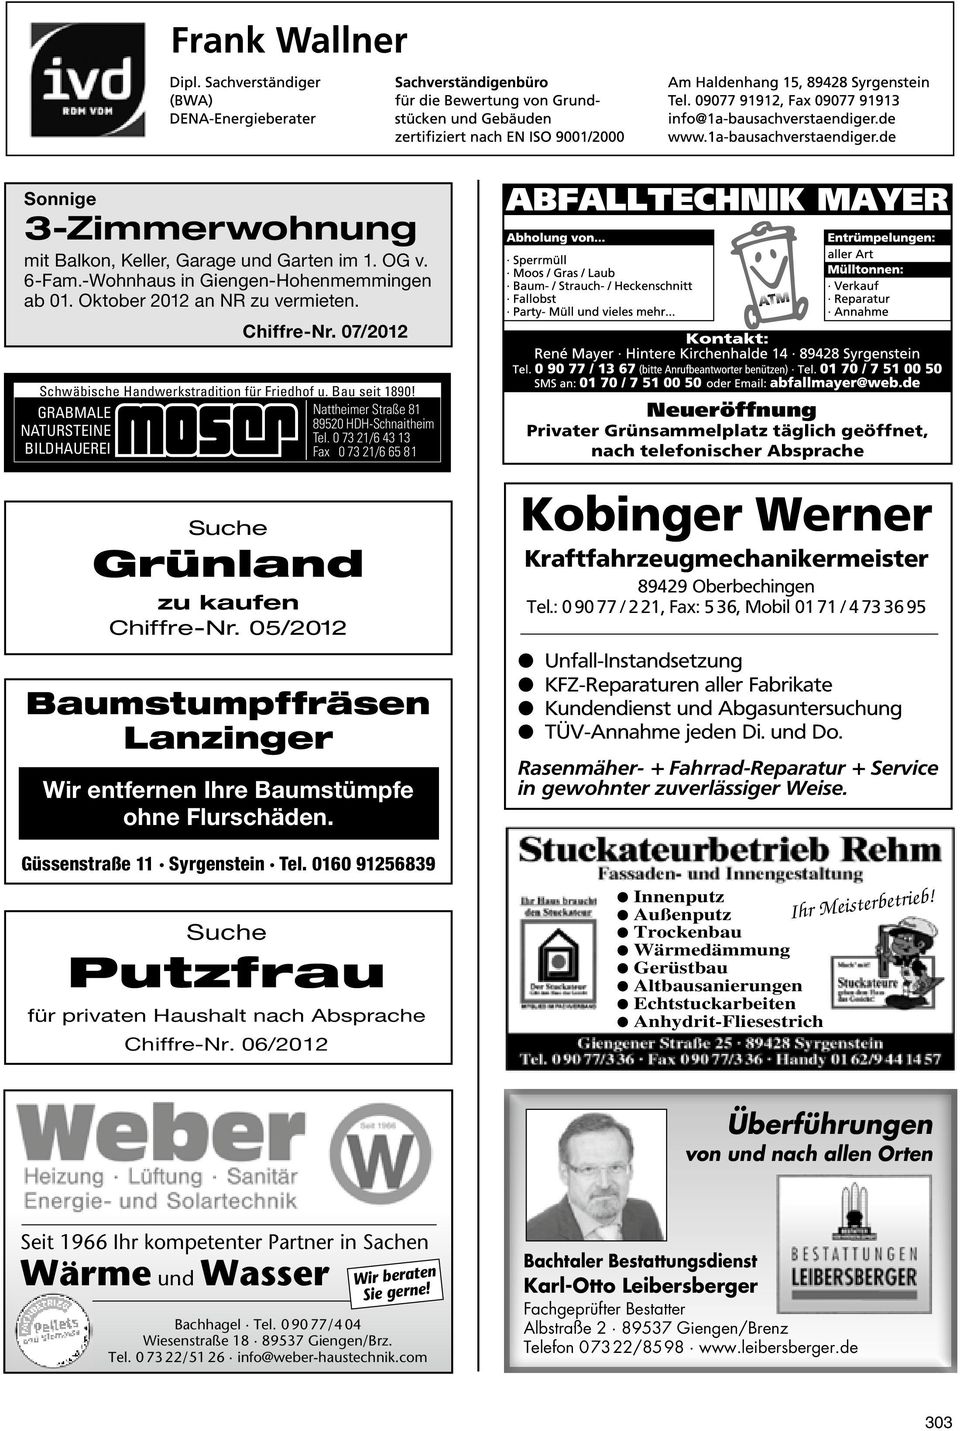 0 73 21/6 43 13 BildHauerei Fax 0 73 21/6 65 81 Moser_Anz_Nattheimer-Anzeiger/Amtbl-Neresheim_90x20mm.indd 1 27.01.11 21:33 Suche Grünland zu kaufen Chiffre-Nr.